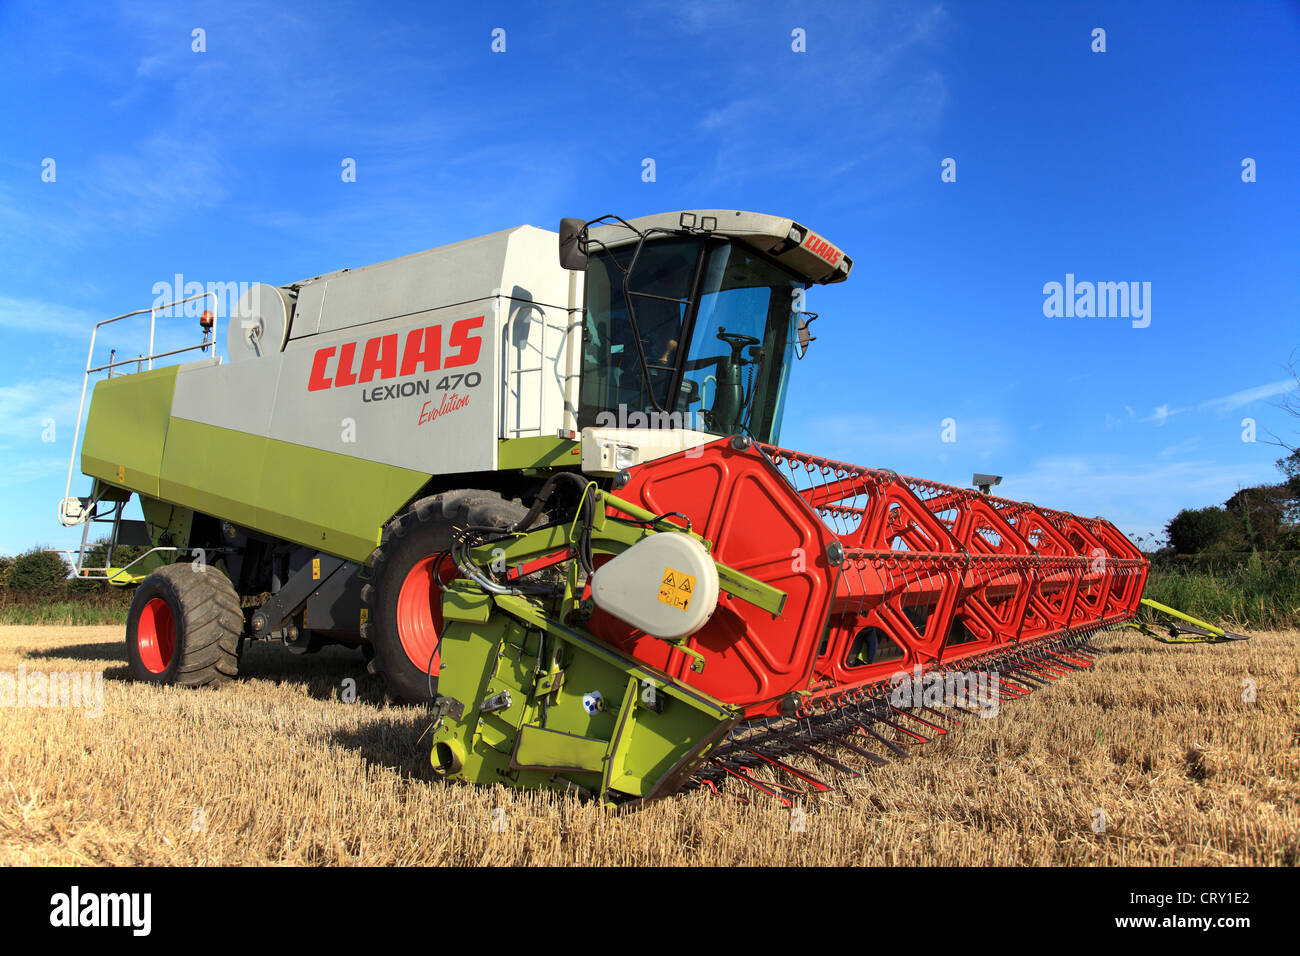 Rendmt Lexion Claas 470 Évolution Combine Harvester. Set against a blue sky Banque D'Images